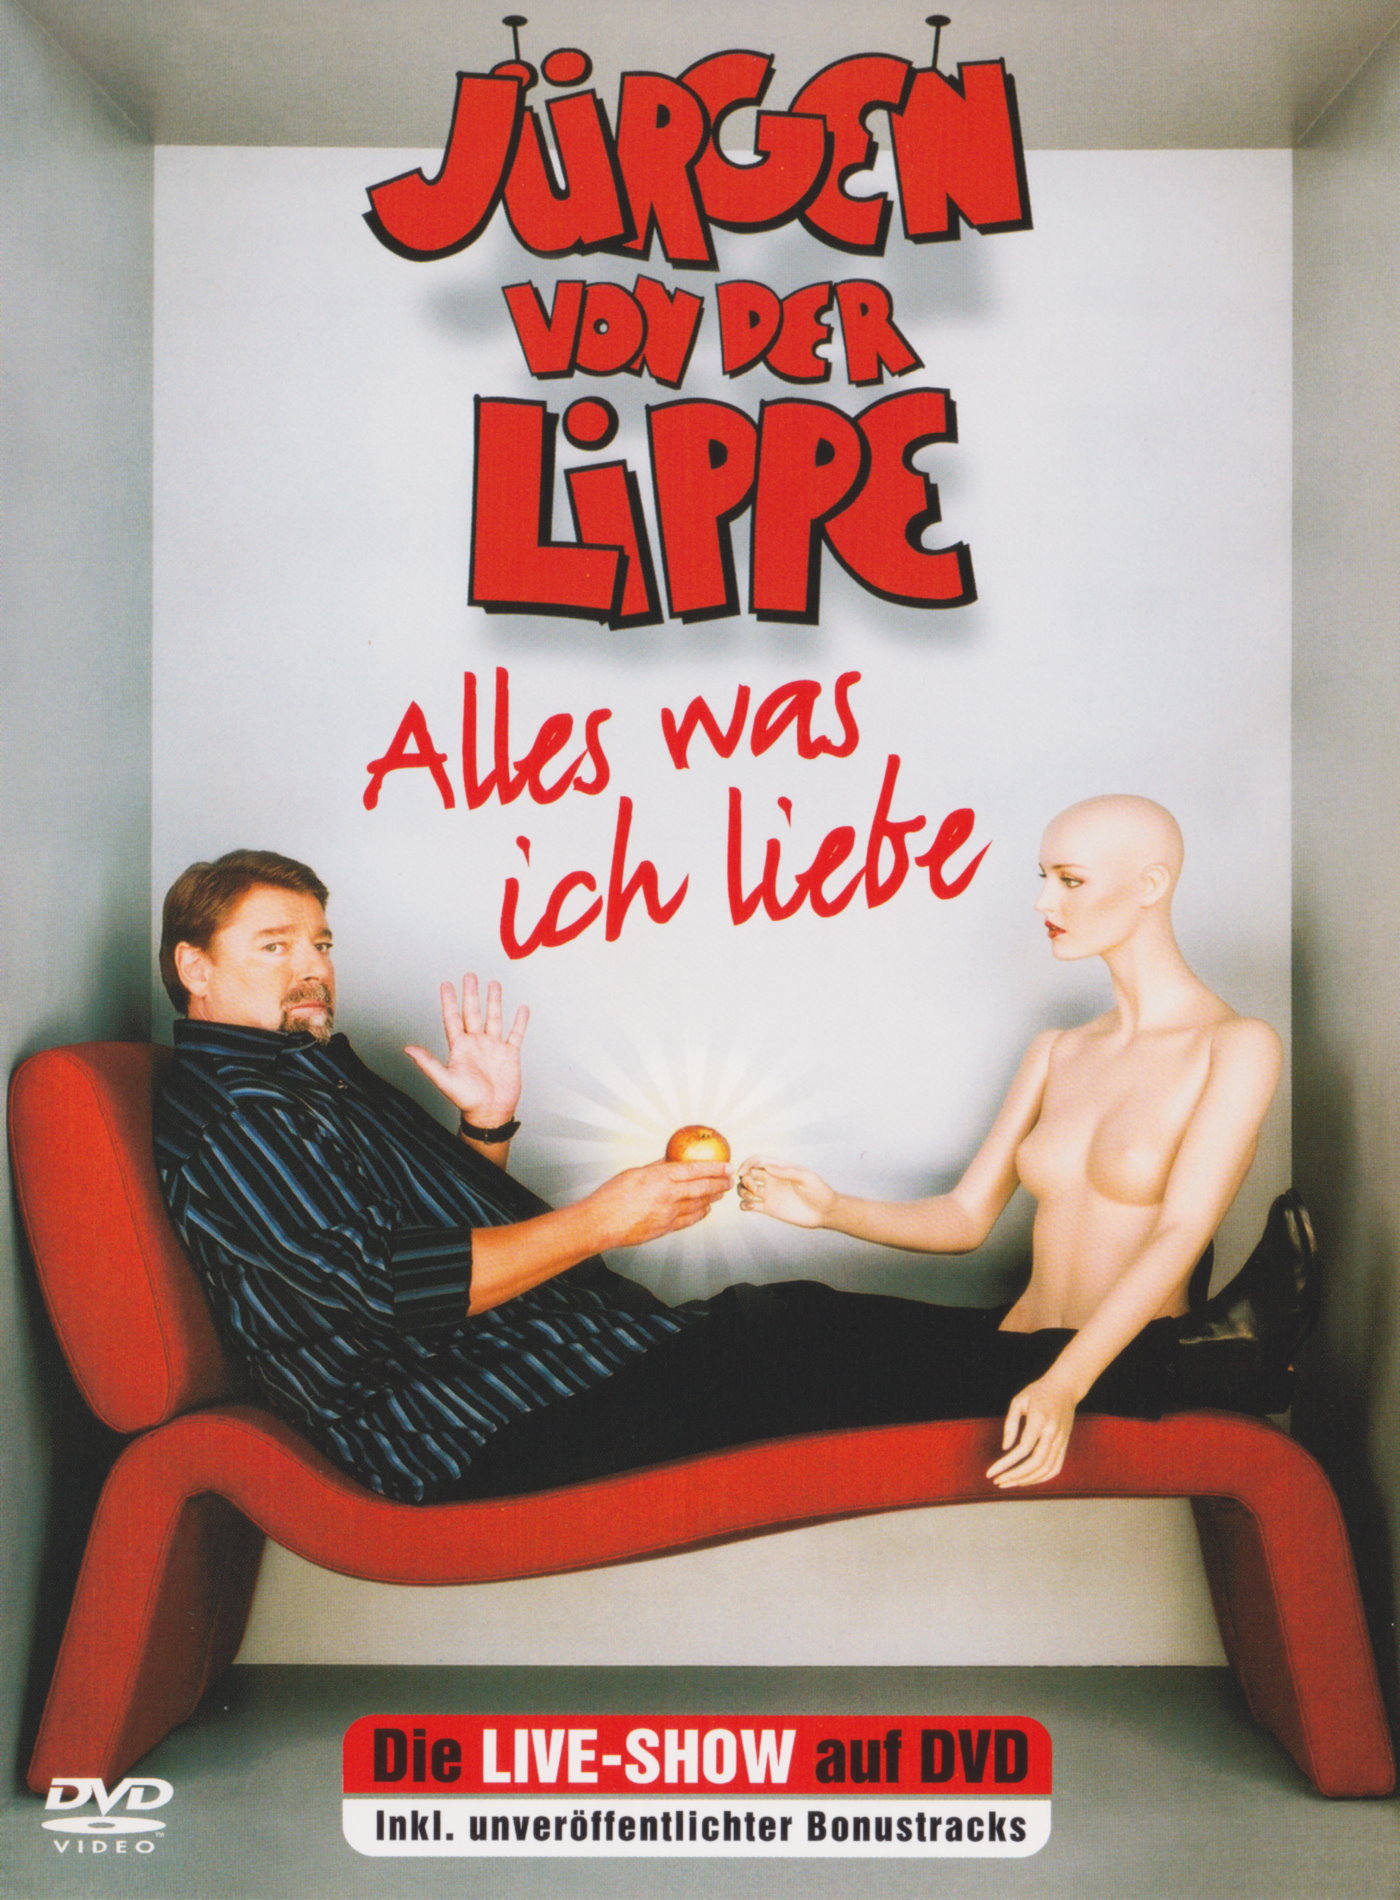 Cover - Jürgen von der Lippe - Alles was ich liebe.jpg